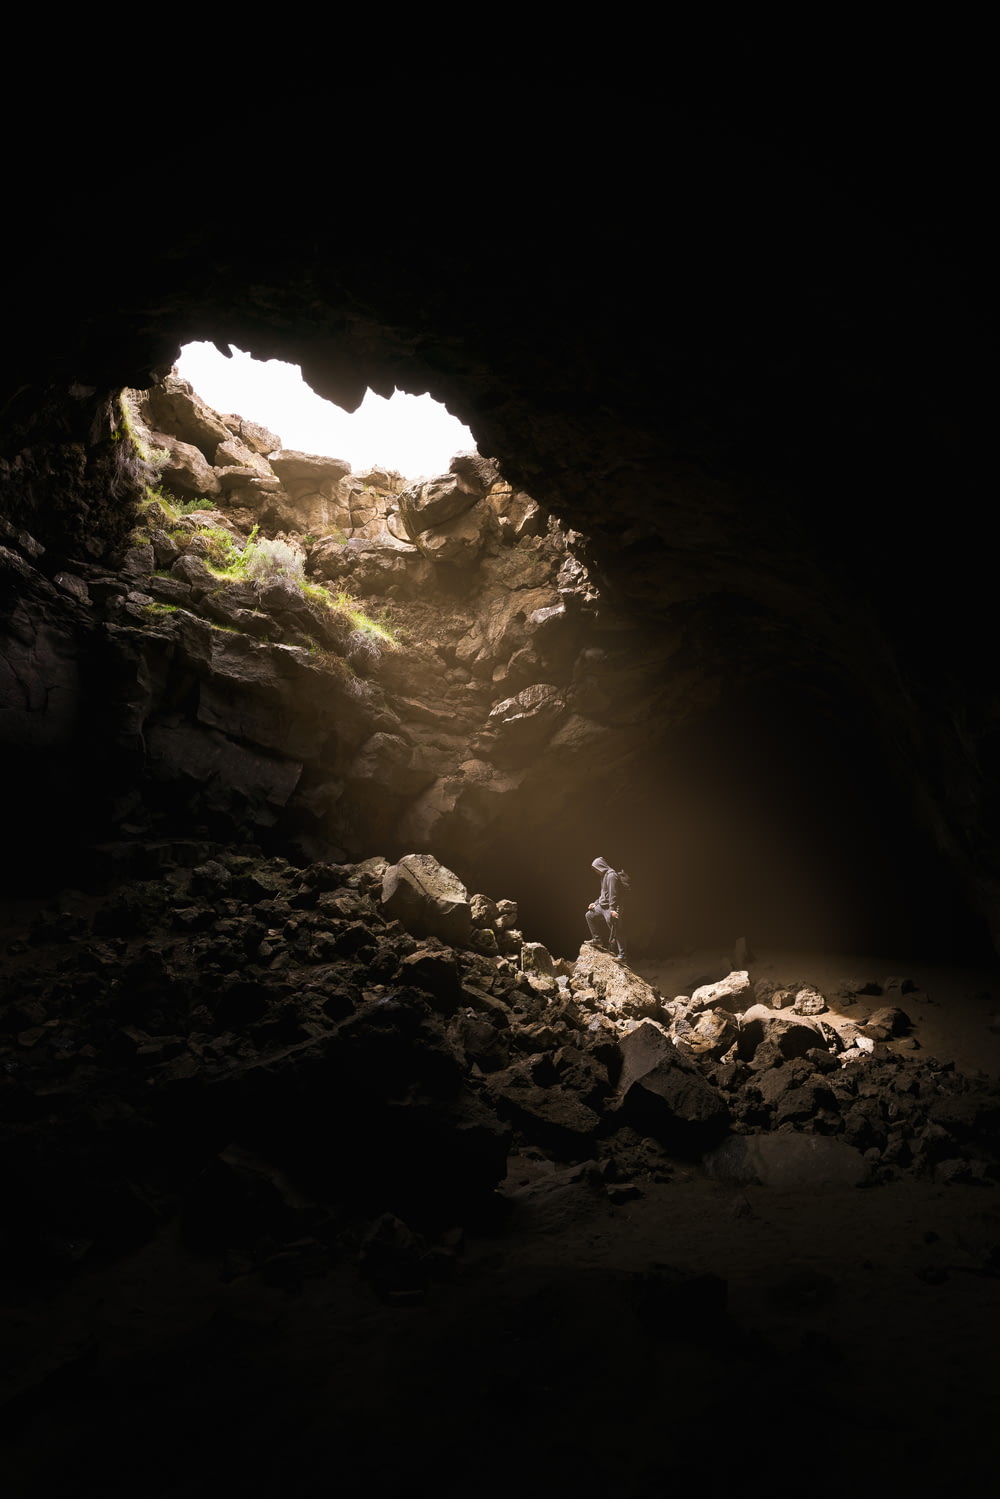 Una persona in piedi in una grotta con una luce che passa attraverso